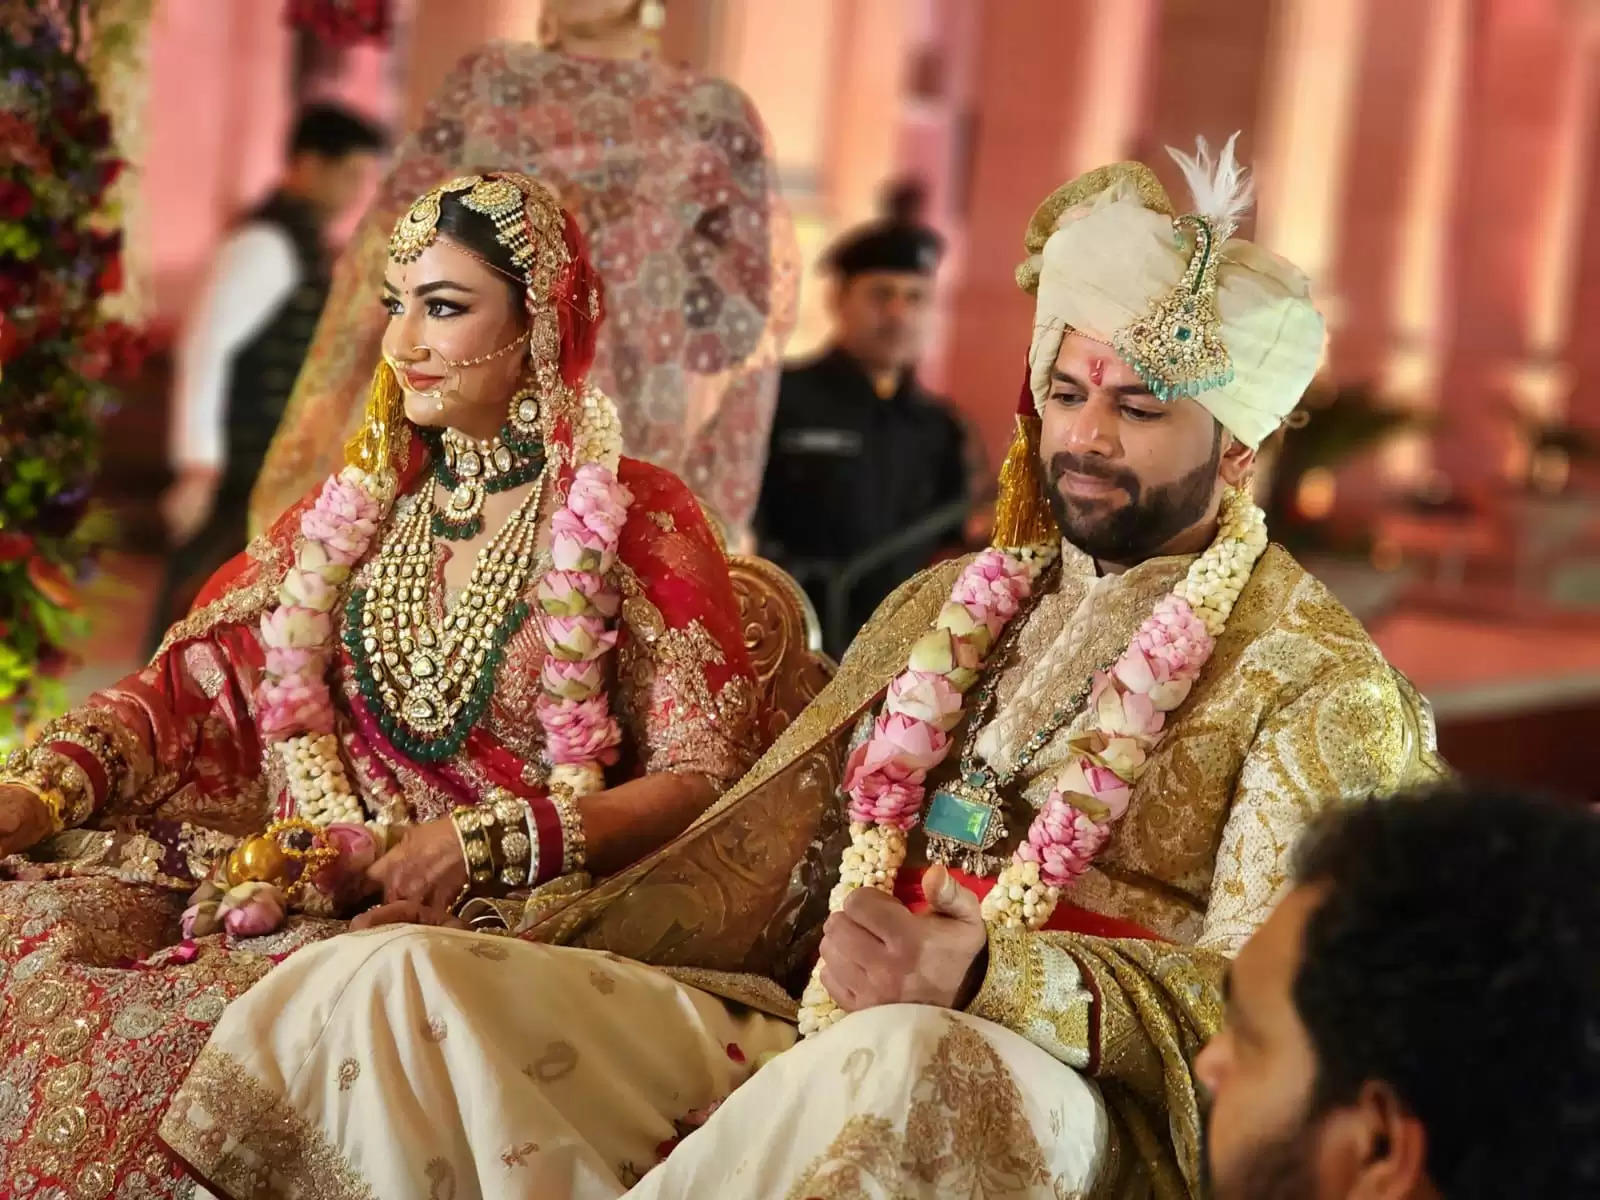 Digvijay Chautala Wedding Photos: दिग्विजय चौटाला और लगन रंधावा की शादी की तस्वीरें, Photos Viral87